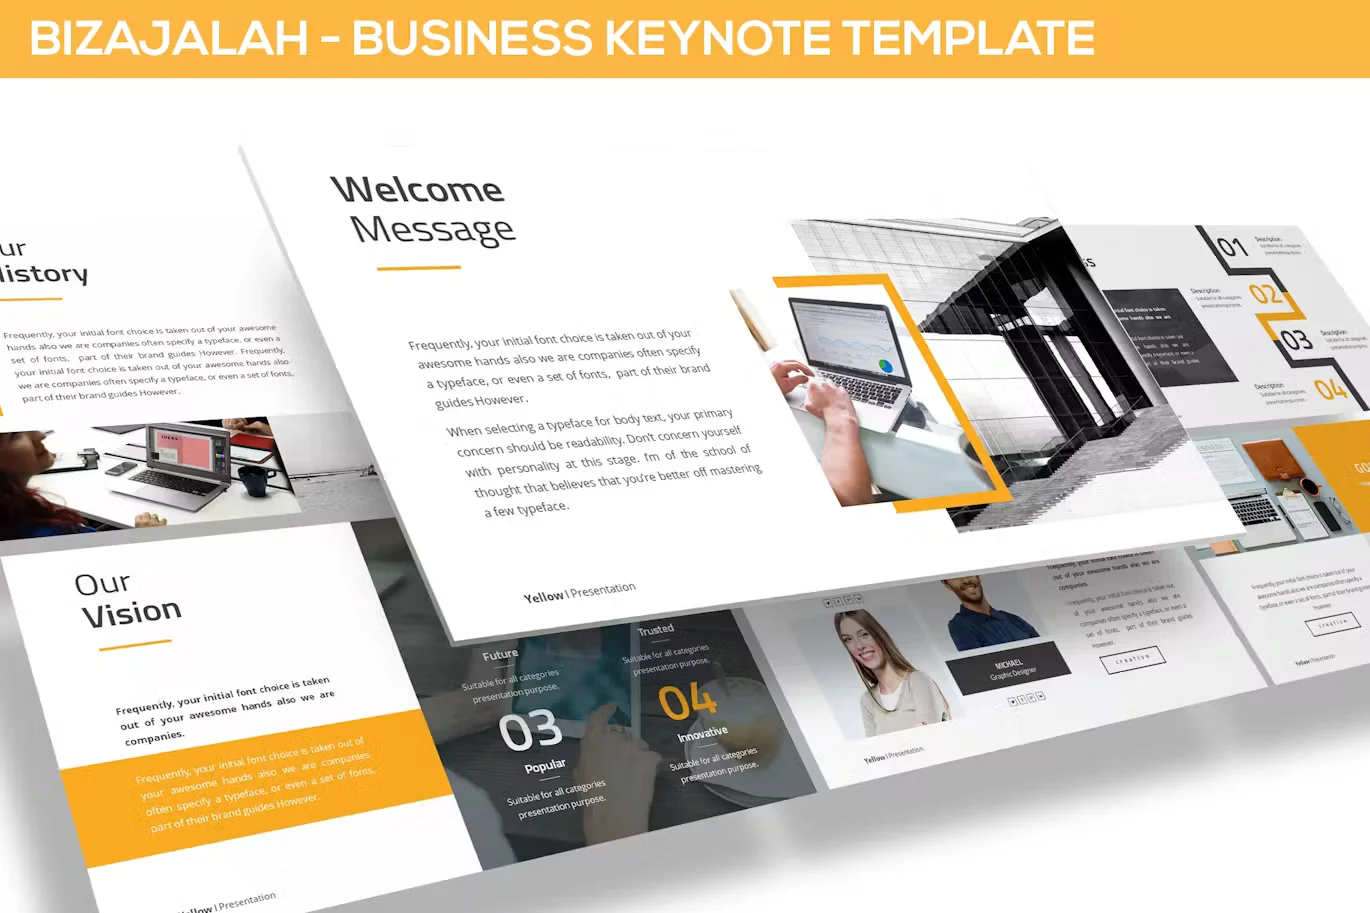 Bizajalah - Business Keynote Template